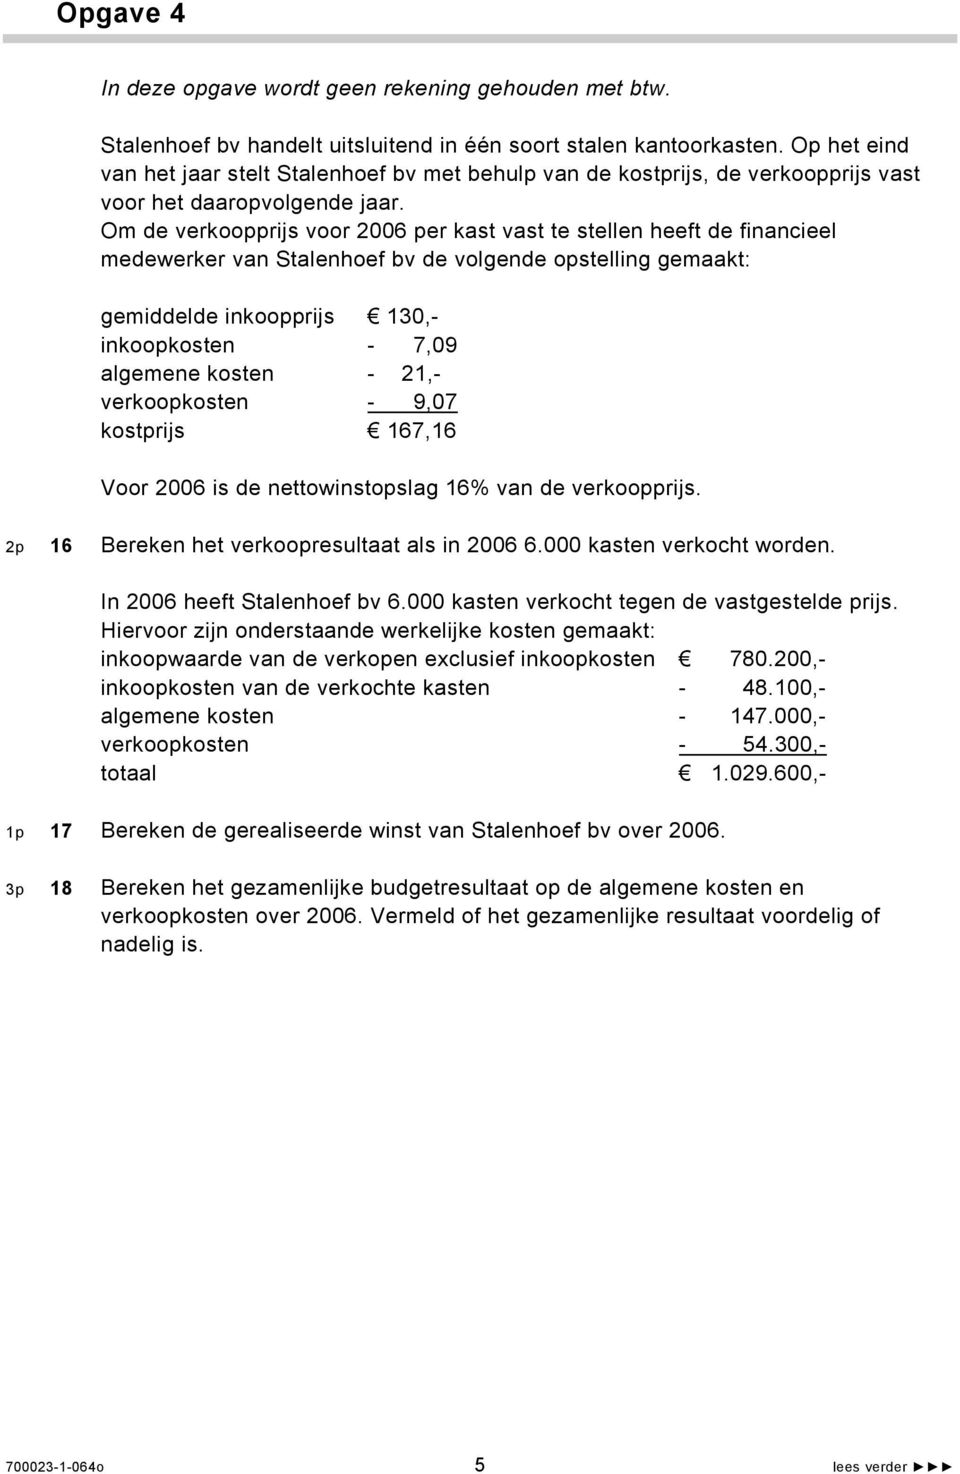 Om de verkoopprijs voor 2006 per kast vast te stellen heeft de financieel medewerker van Stalenhoef bv de volgende opstelling gemaakt: gemiddelde inkoopprijs 130,- inkoopkosten - 7,09 algemene kosten